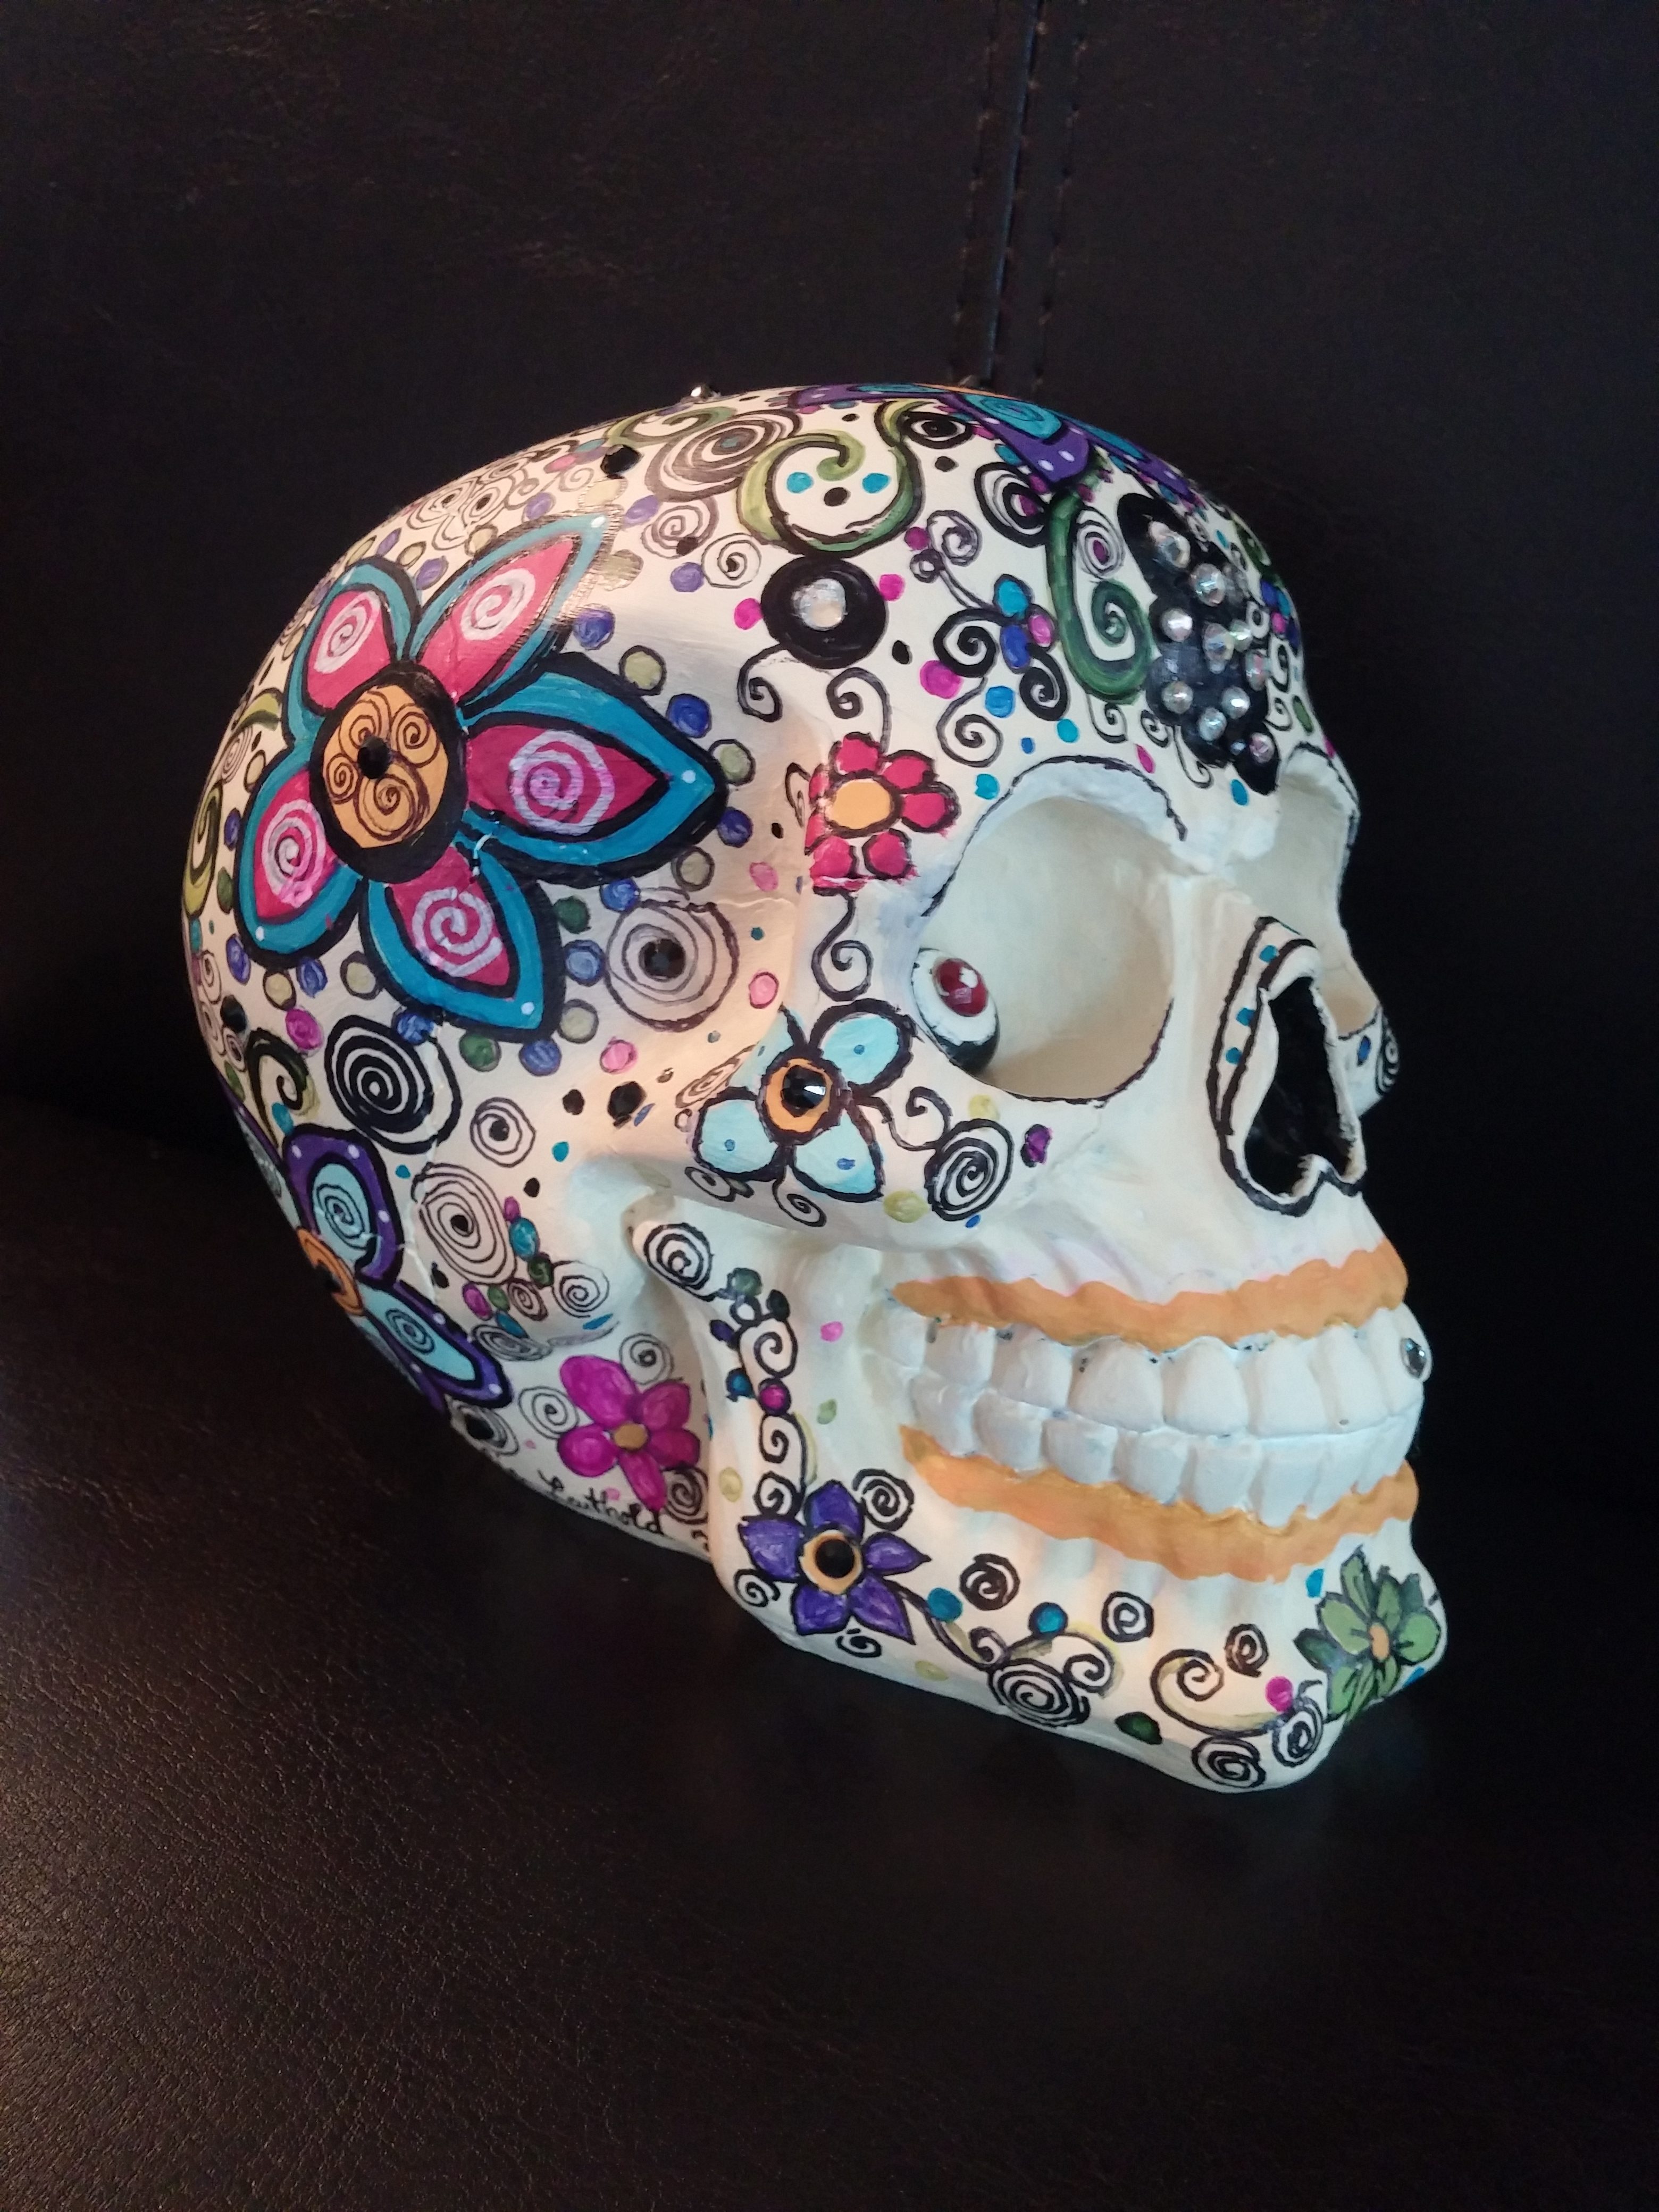 Sugar Skull by Julie via Flickr